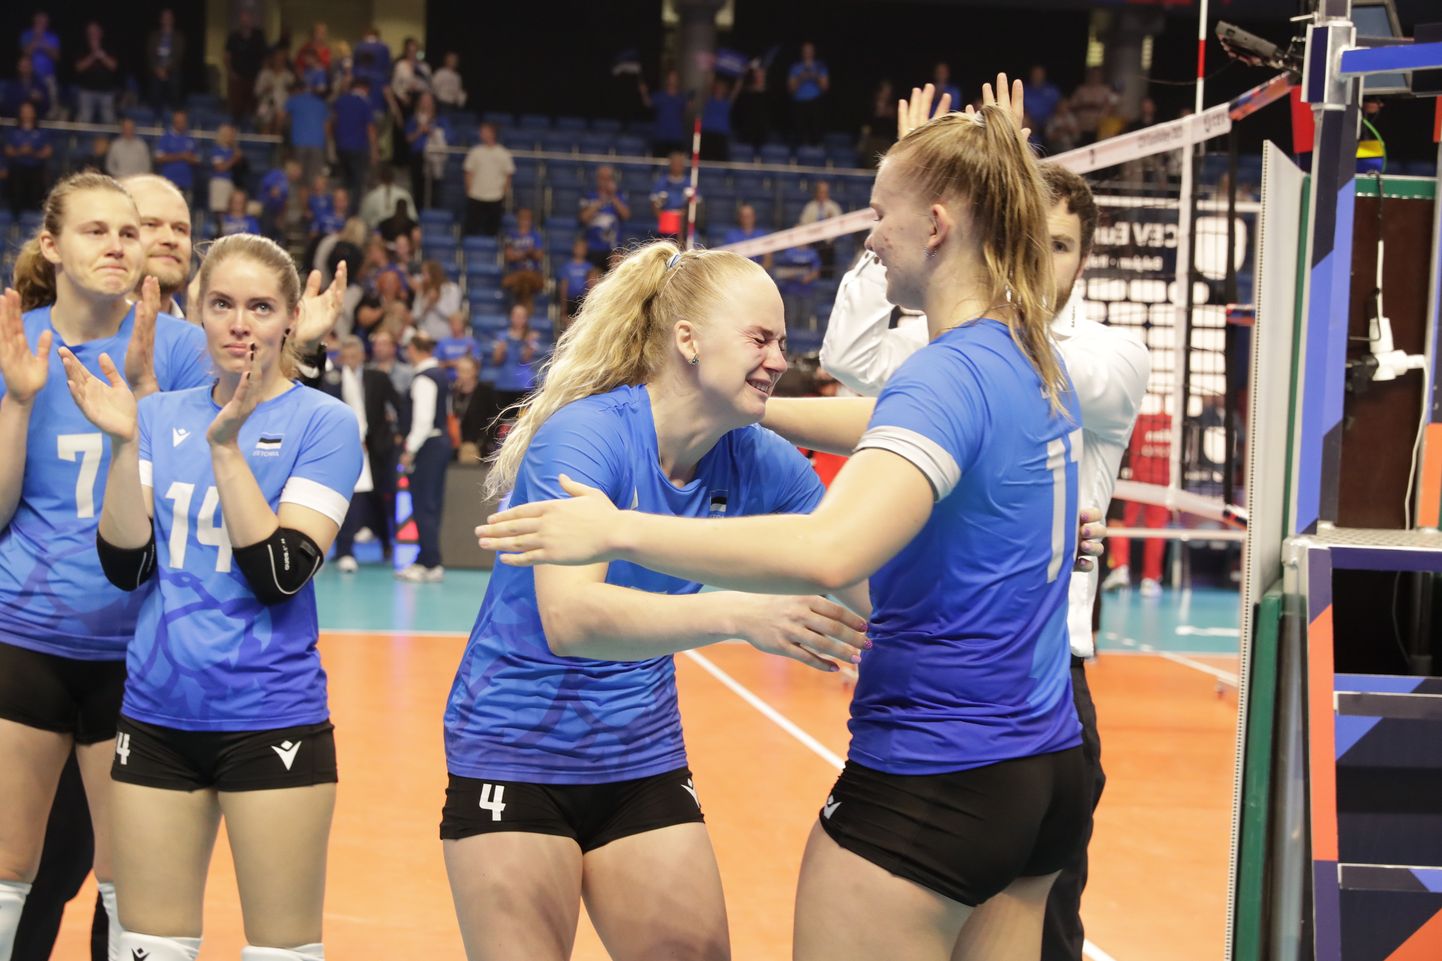 Eesti jäi võiduta, ent pakkus emotsionaalse turniiri.